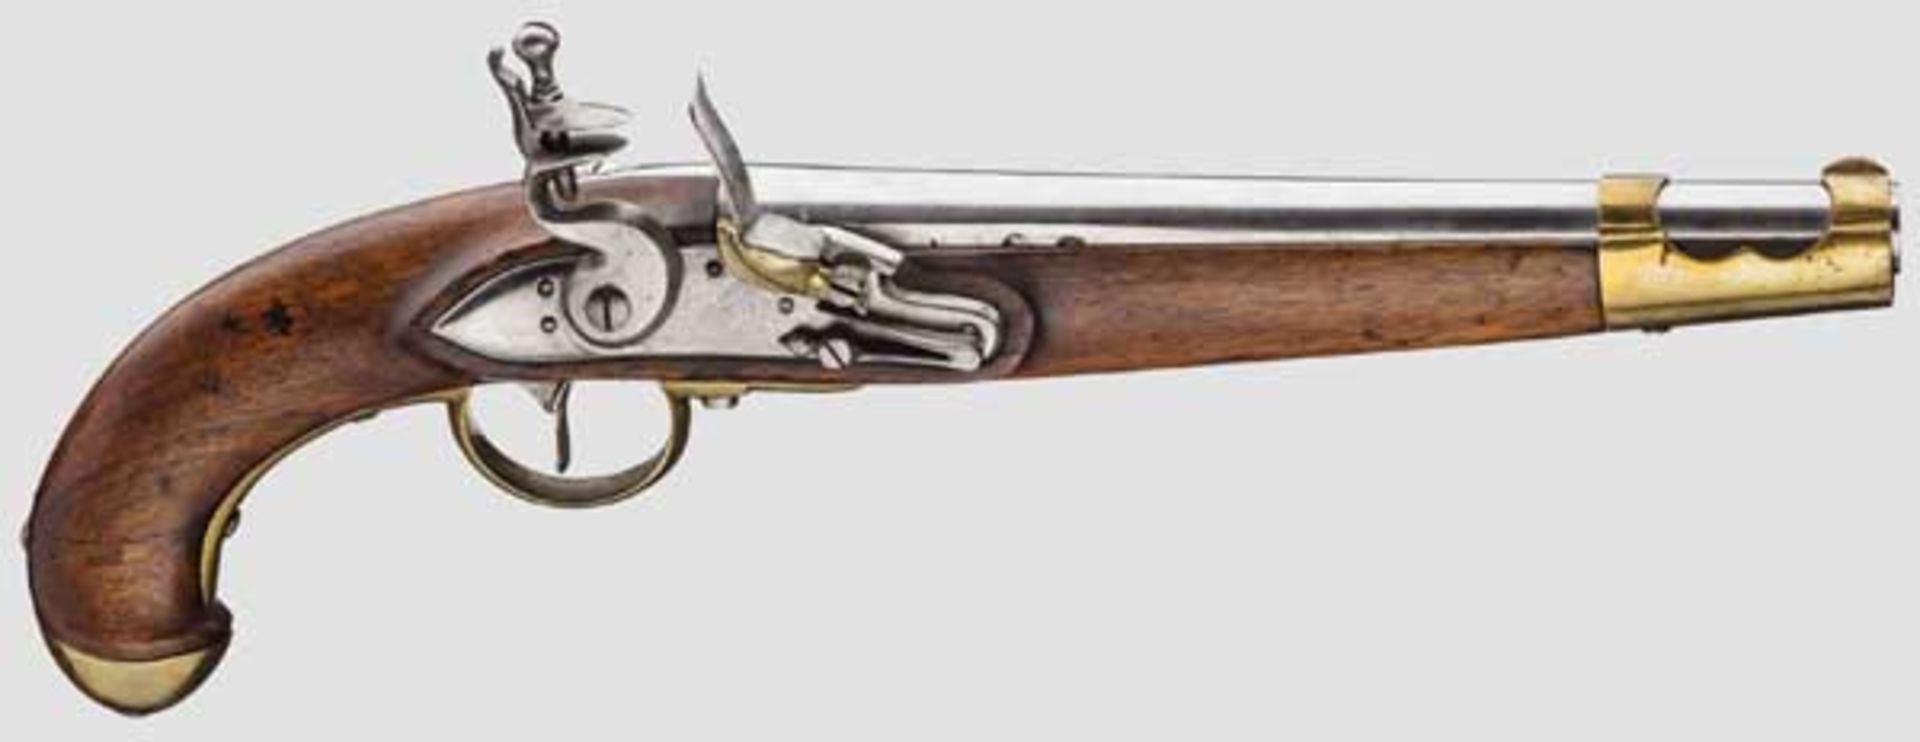 Kavalleriepistole M 1798 Glatter Lauf im Kaliber 17,5 mm. Steinschloss mit Messingpfanne, rechts und